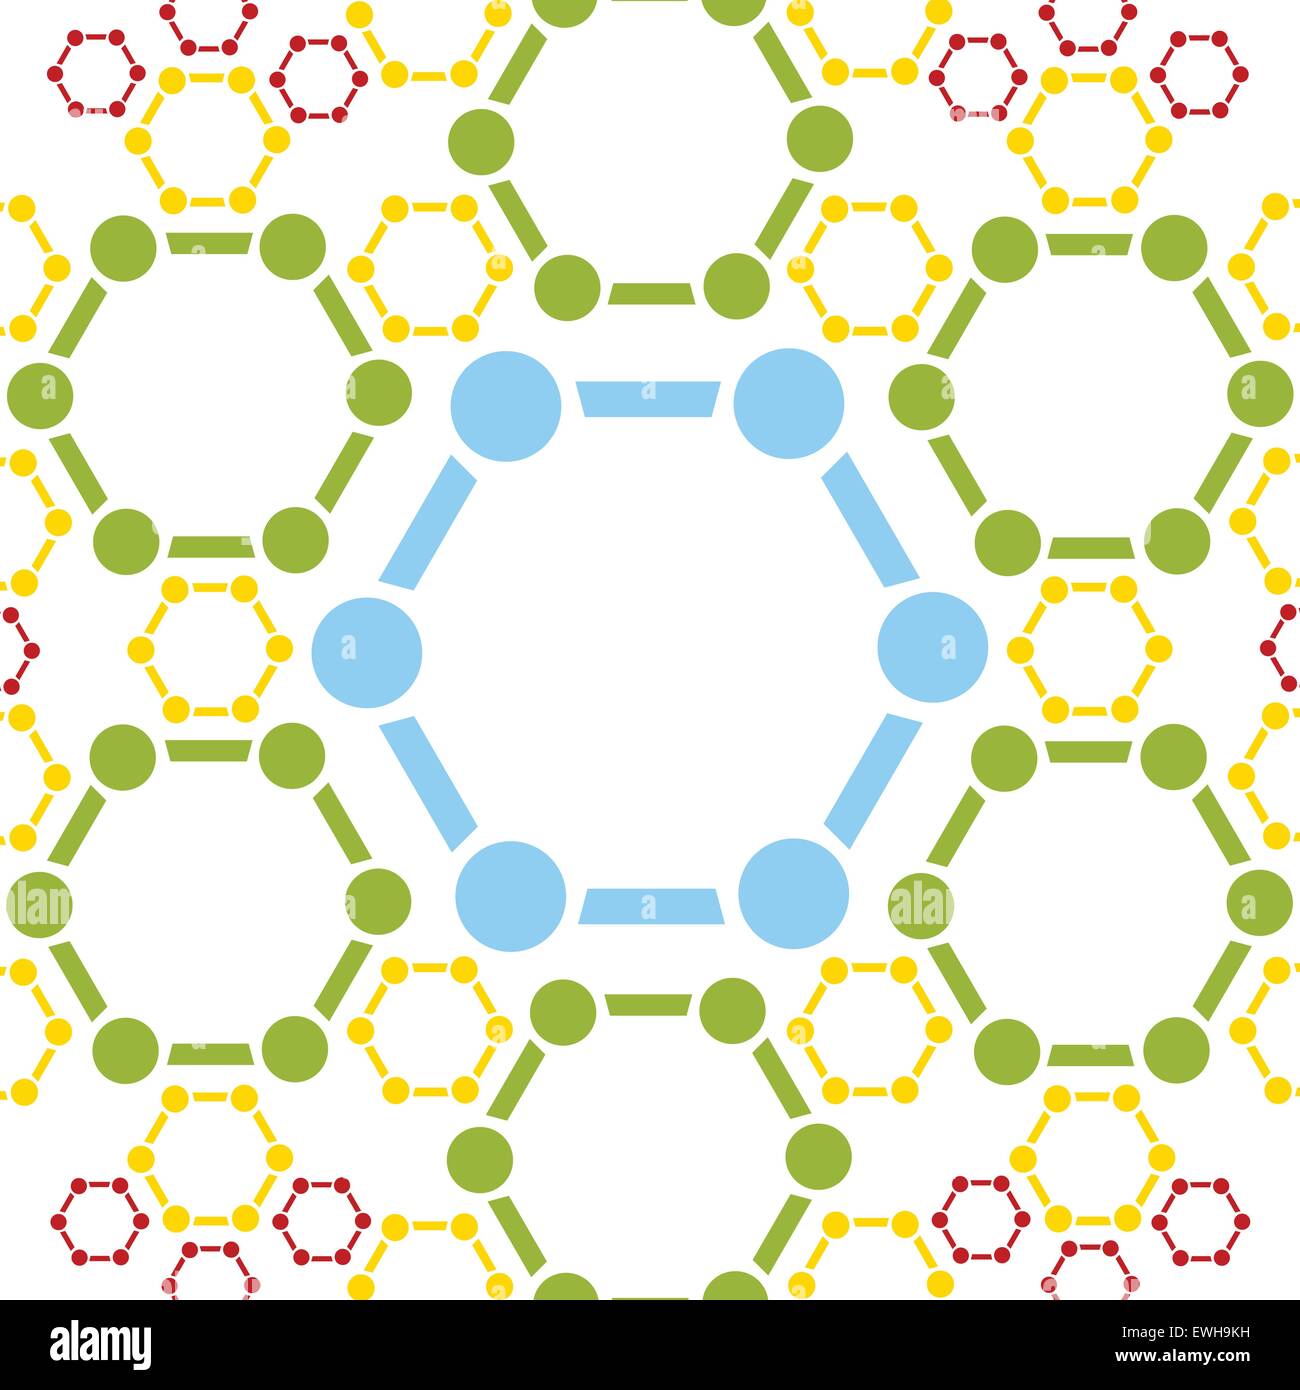 Zusammenfassung Hintergrund der Molekülstruktur. Medizinische Vektor-design Stock Vektor